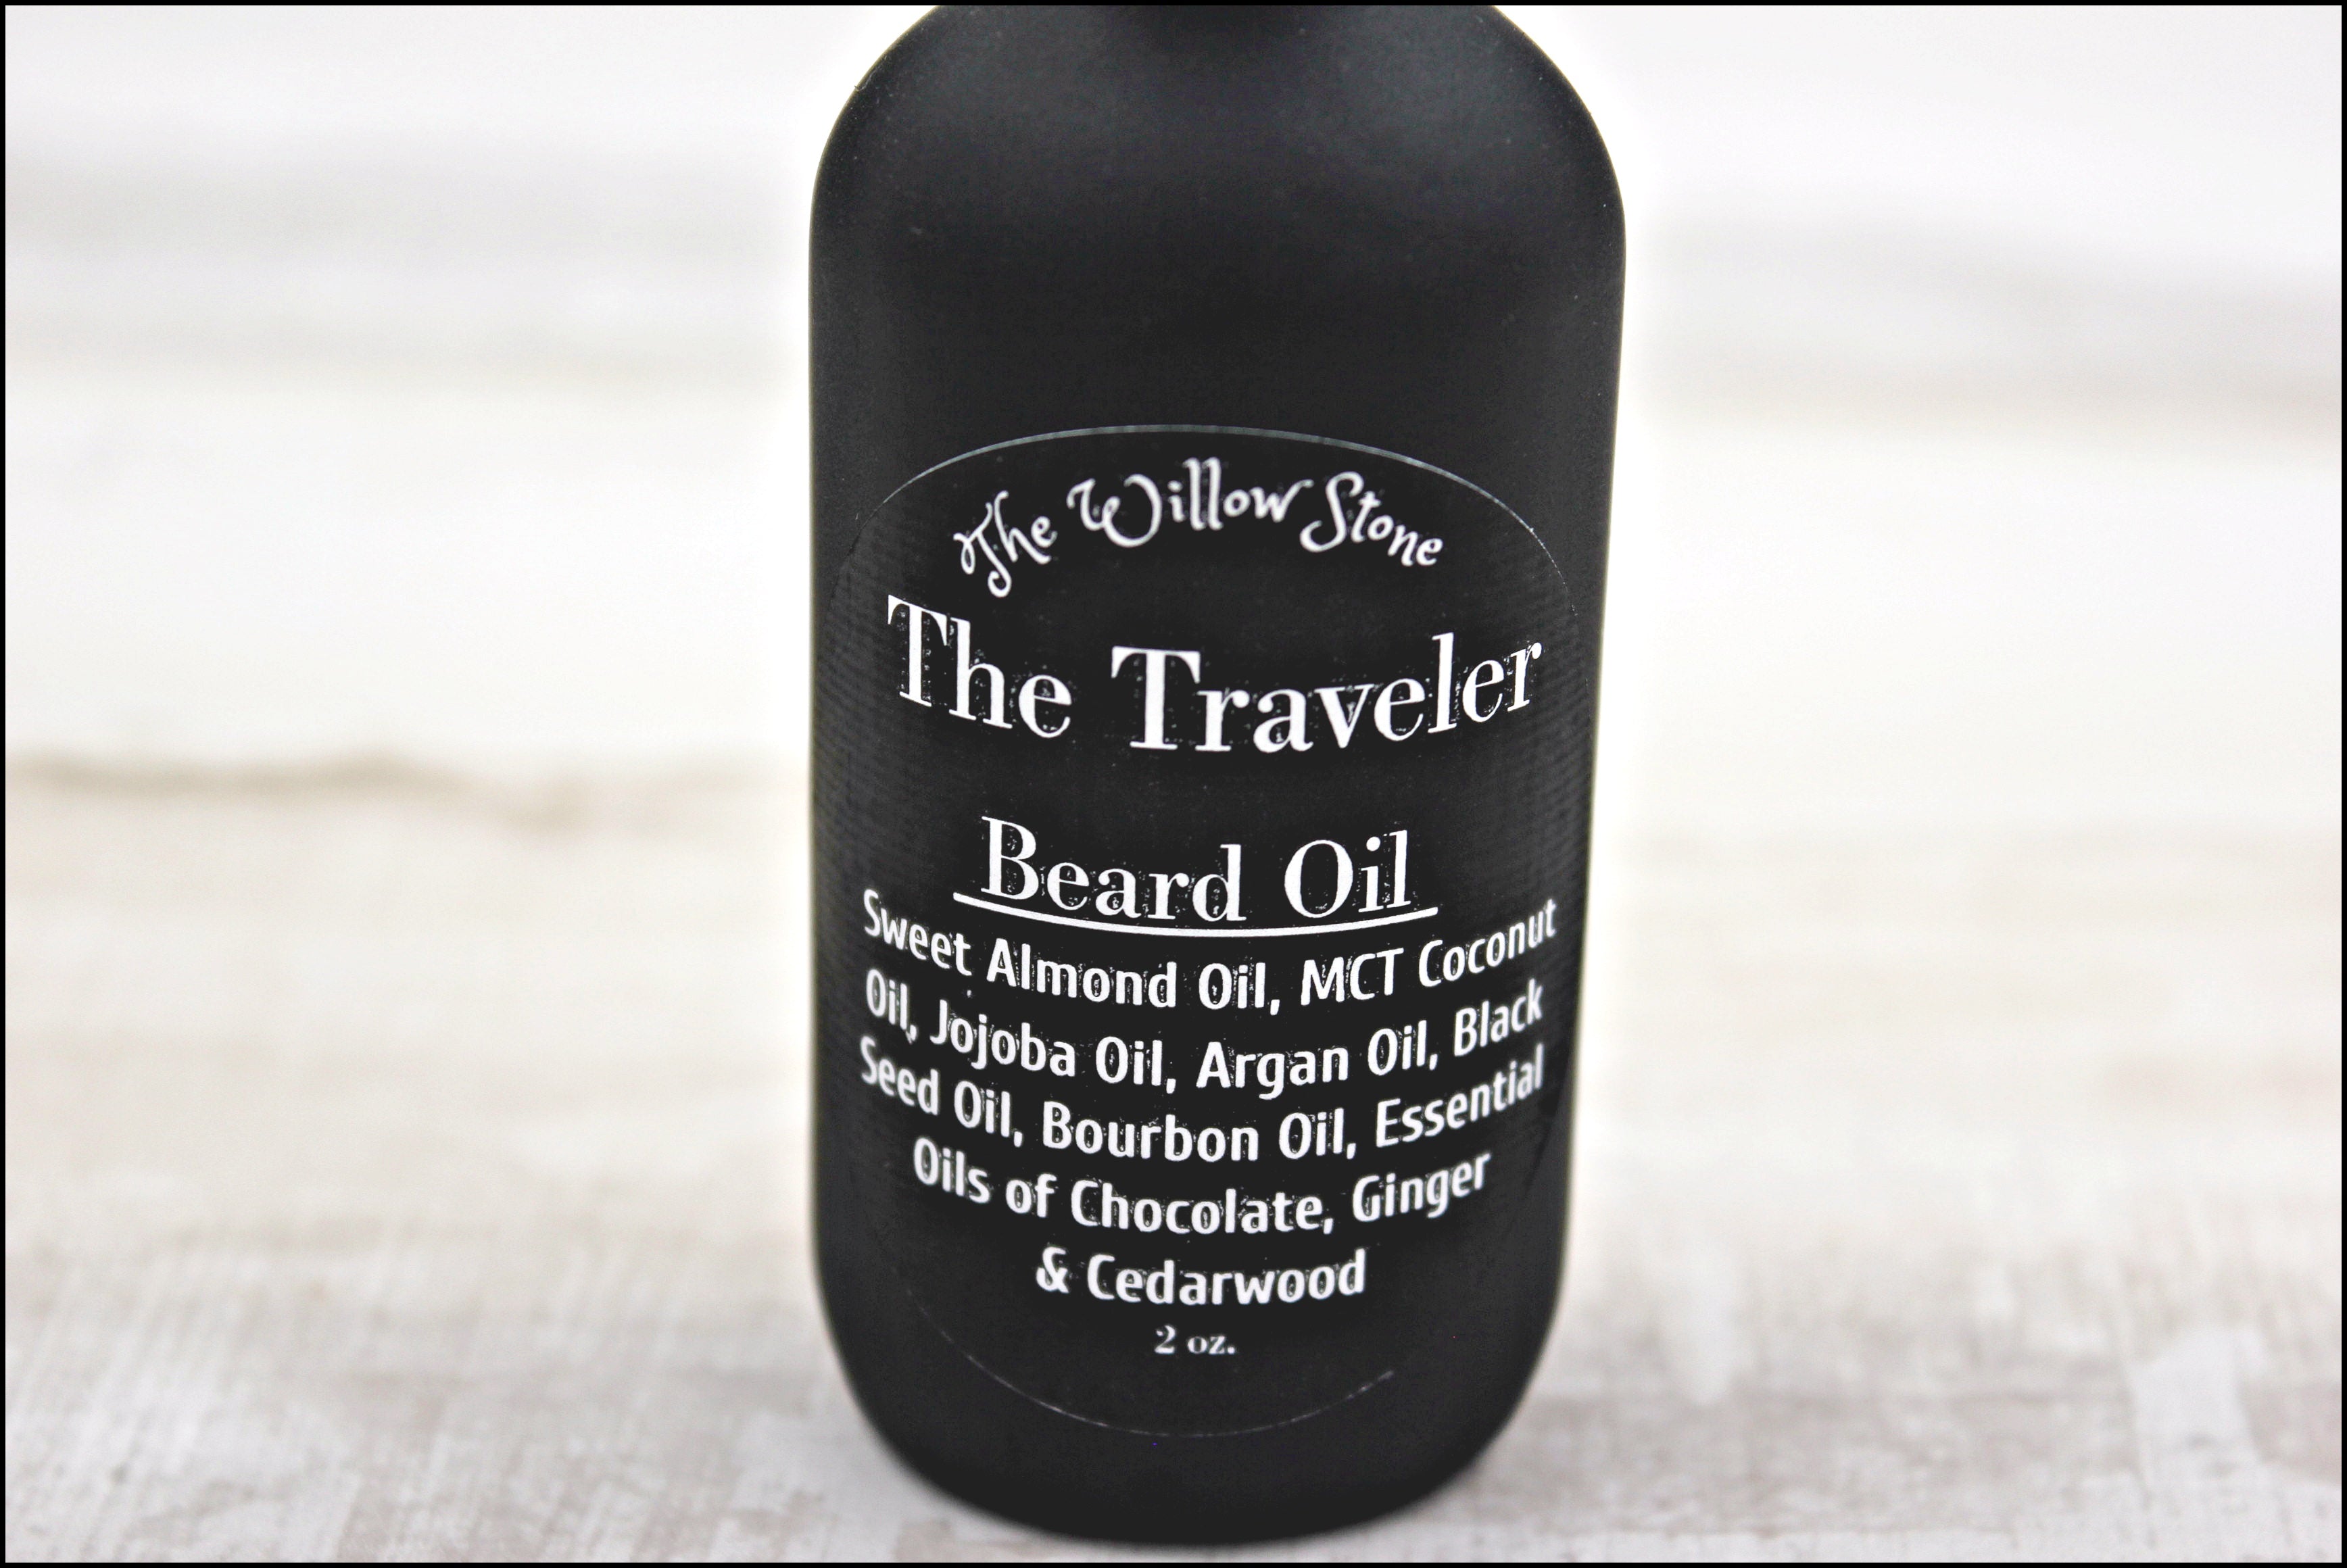 The Traveler Beard Oil